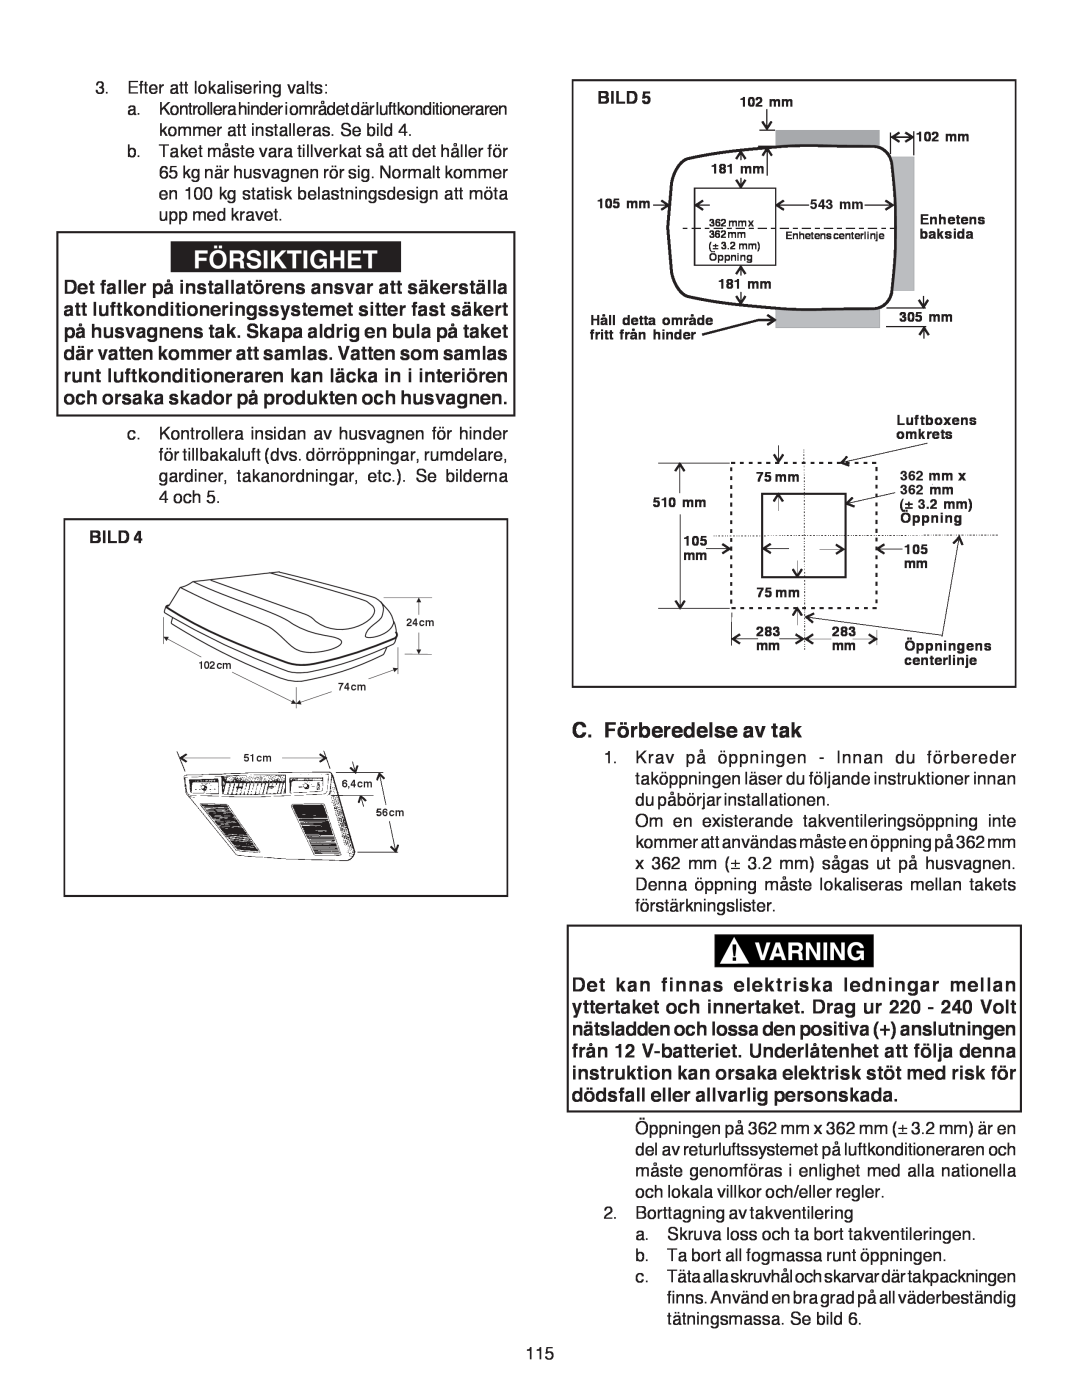 Dometic B3200 manual Försiktighet, C.Förberedelse av tak, Bild 